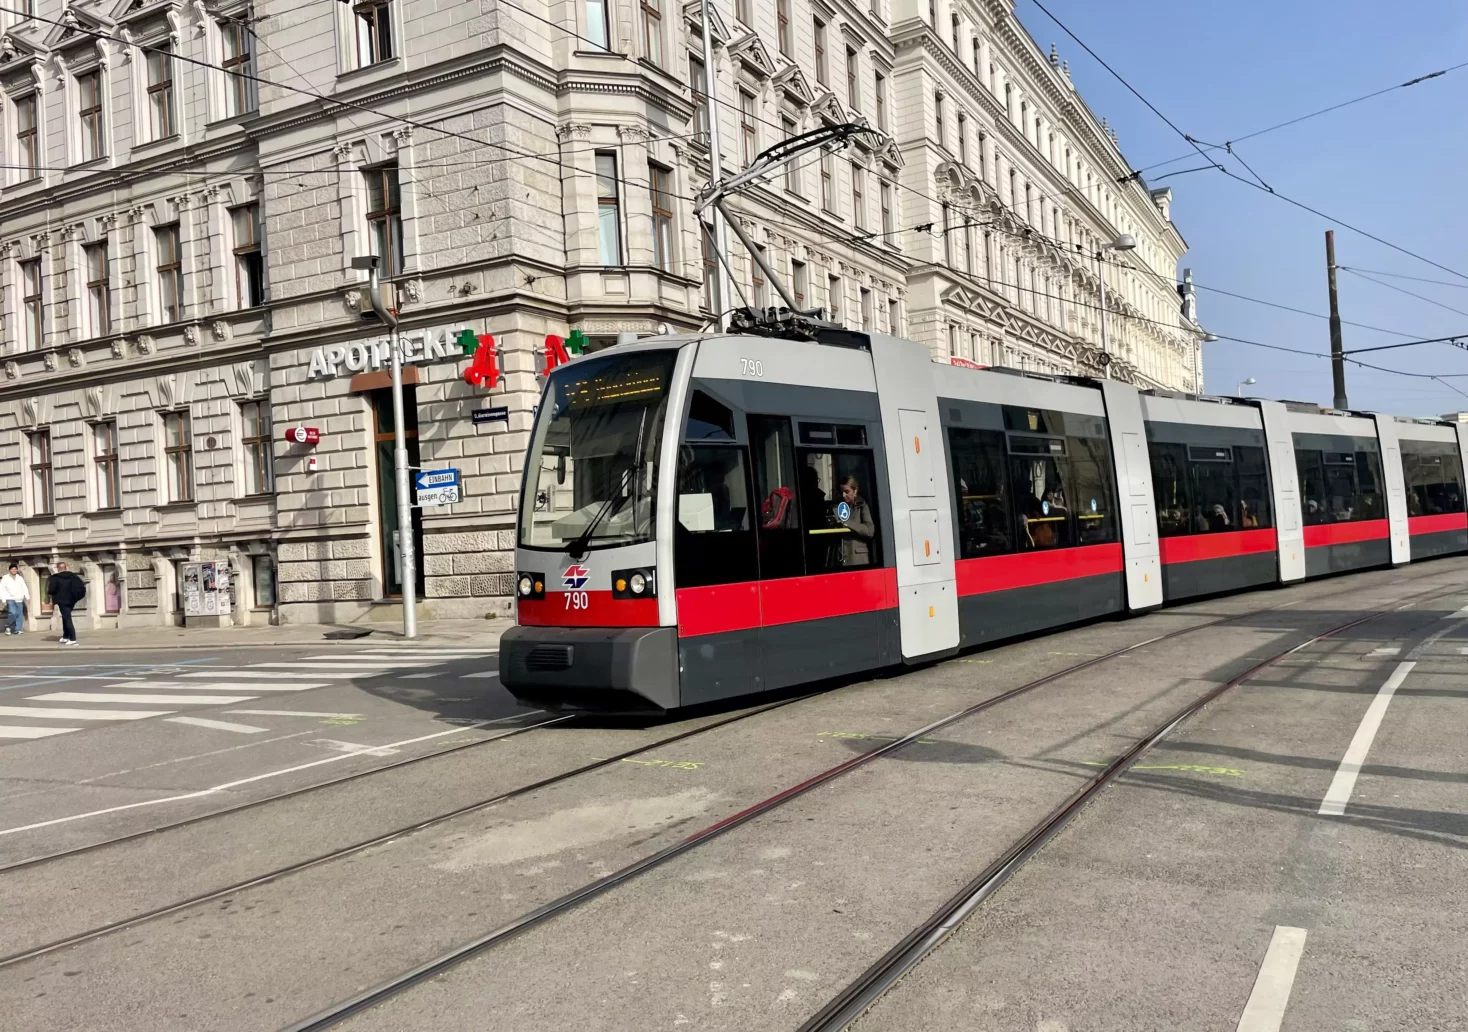 Bild auf 5min.at zeigt eine Straßenbahn in Wien.